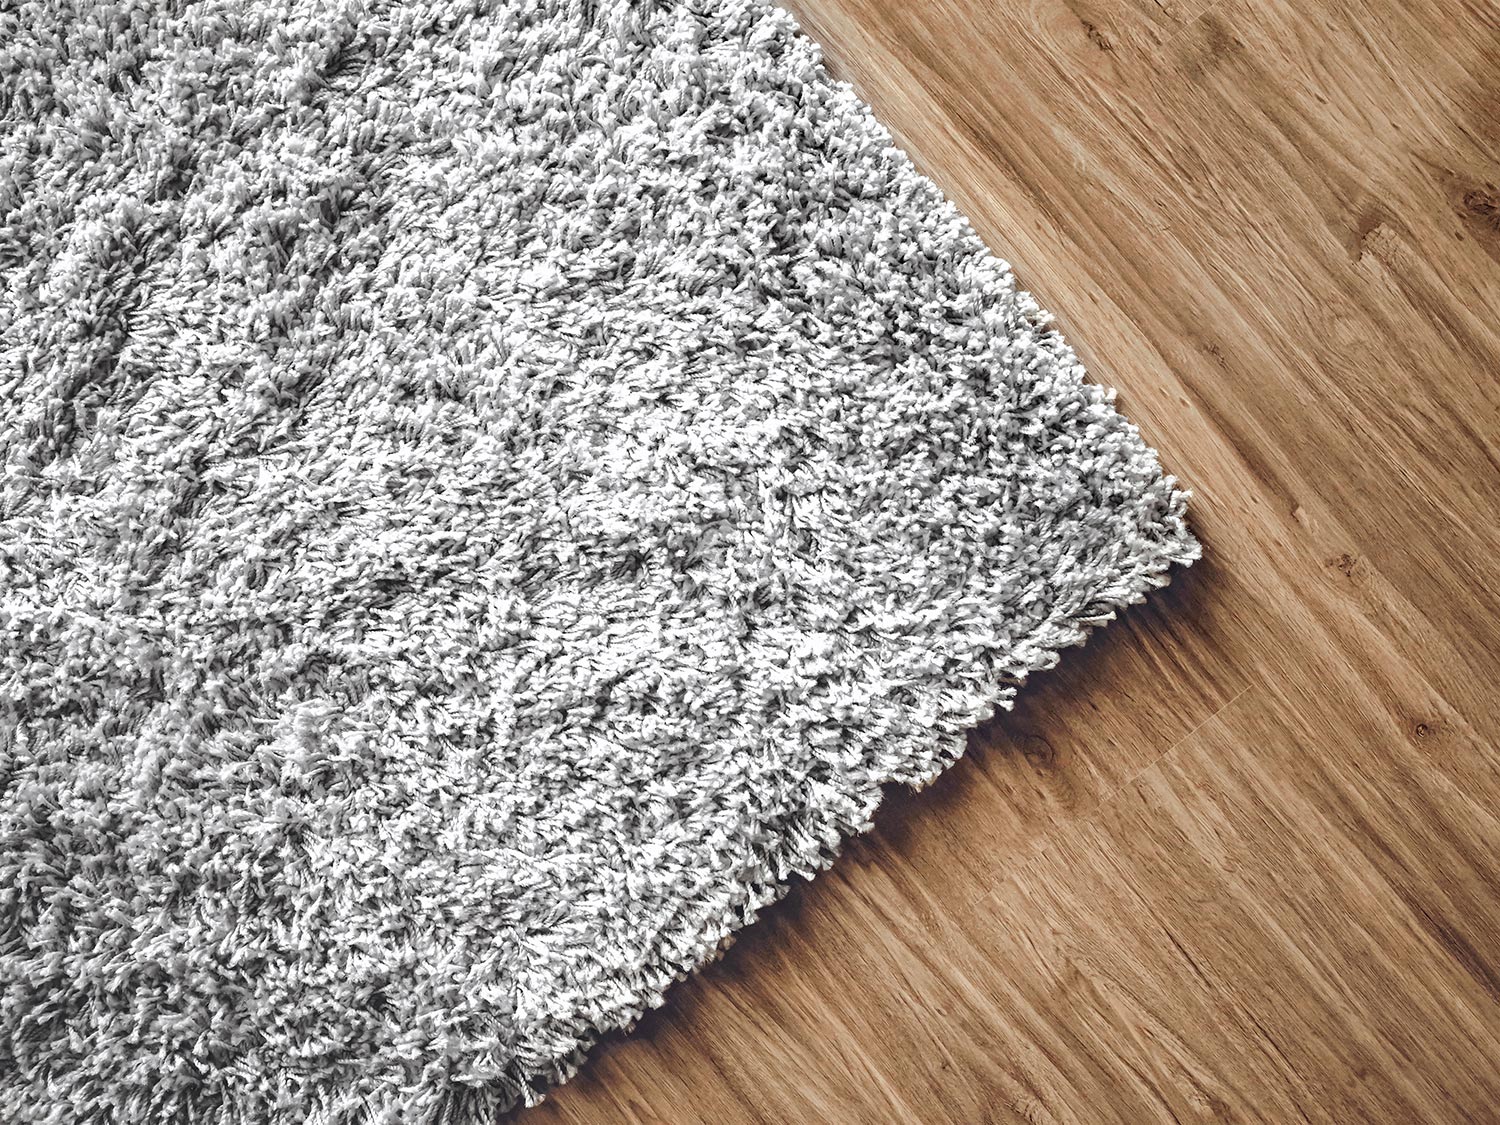 Carpet on parquet floor